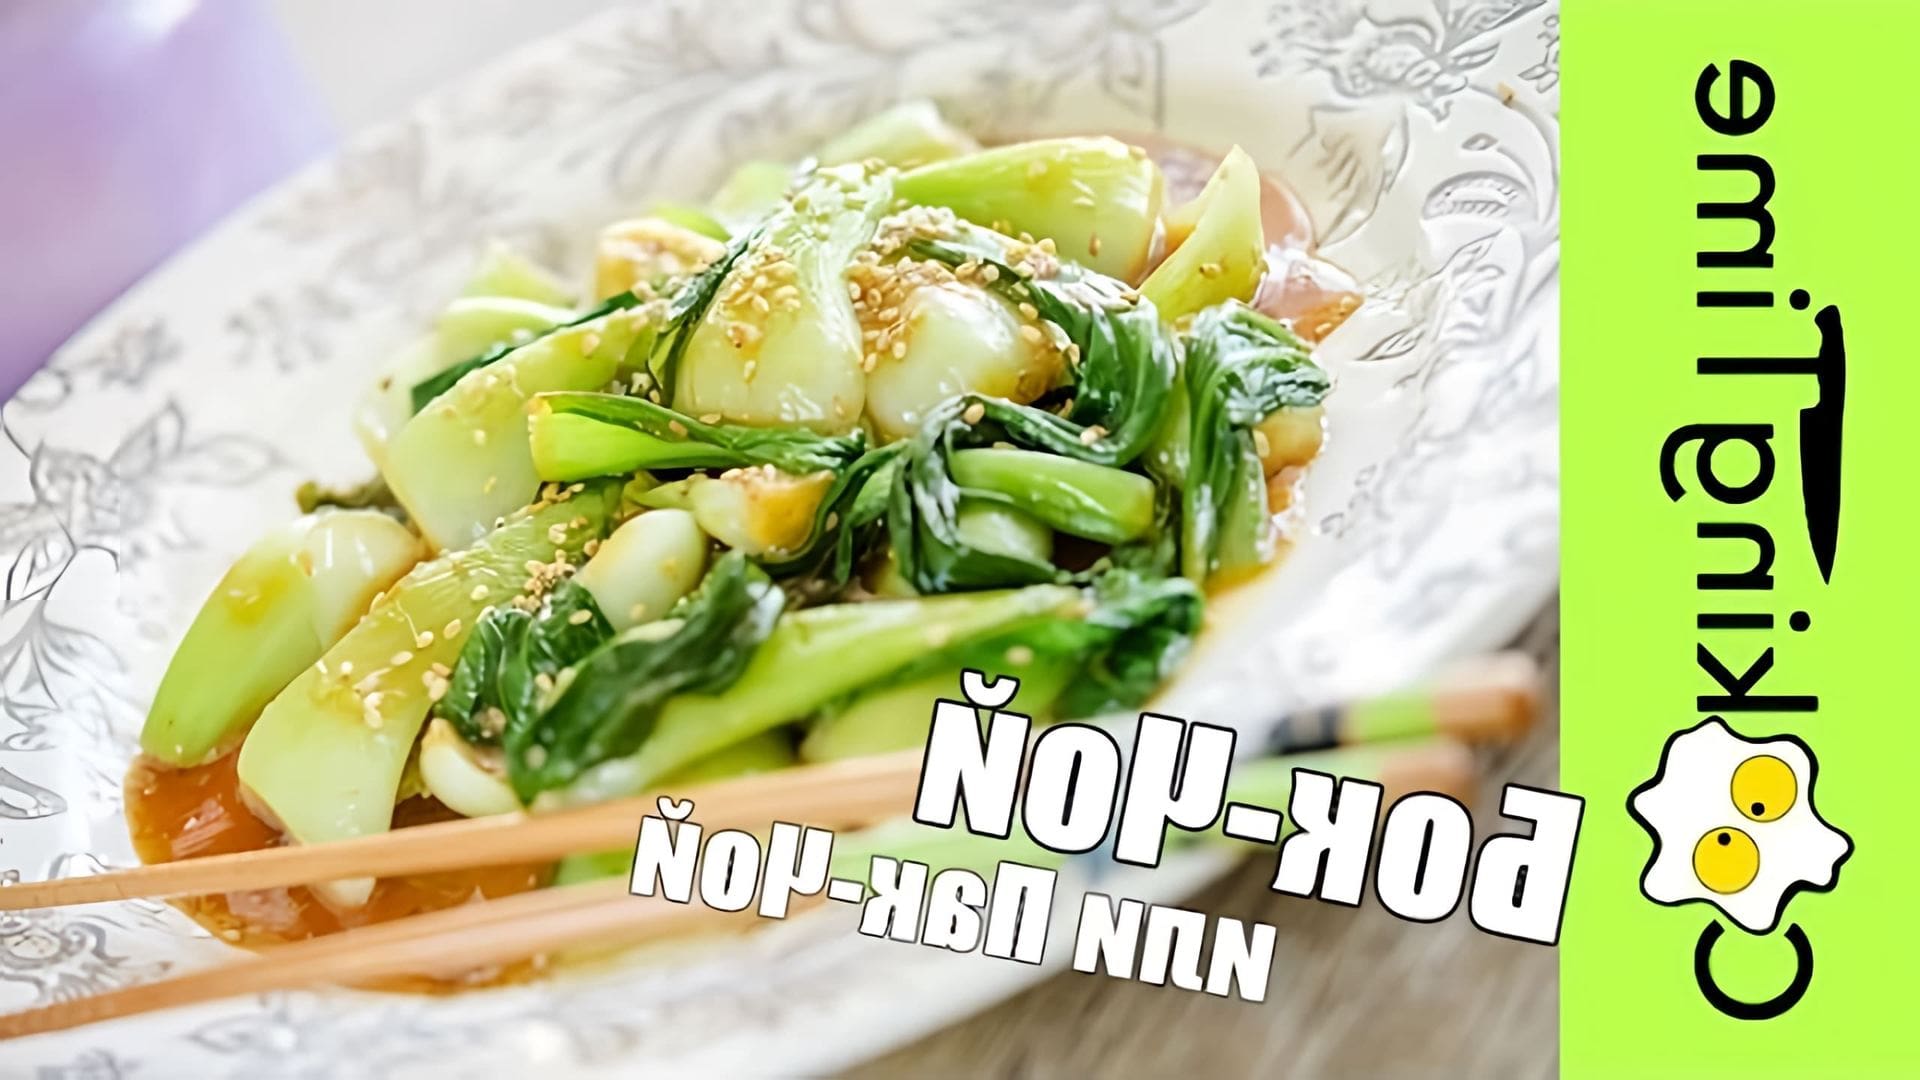 В этом видео демонстрируется простой и быстрый рецепт приготовления бок чой, или китайской листовой капусты